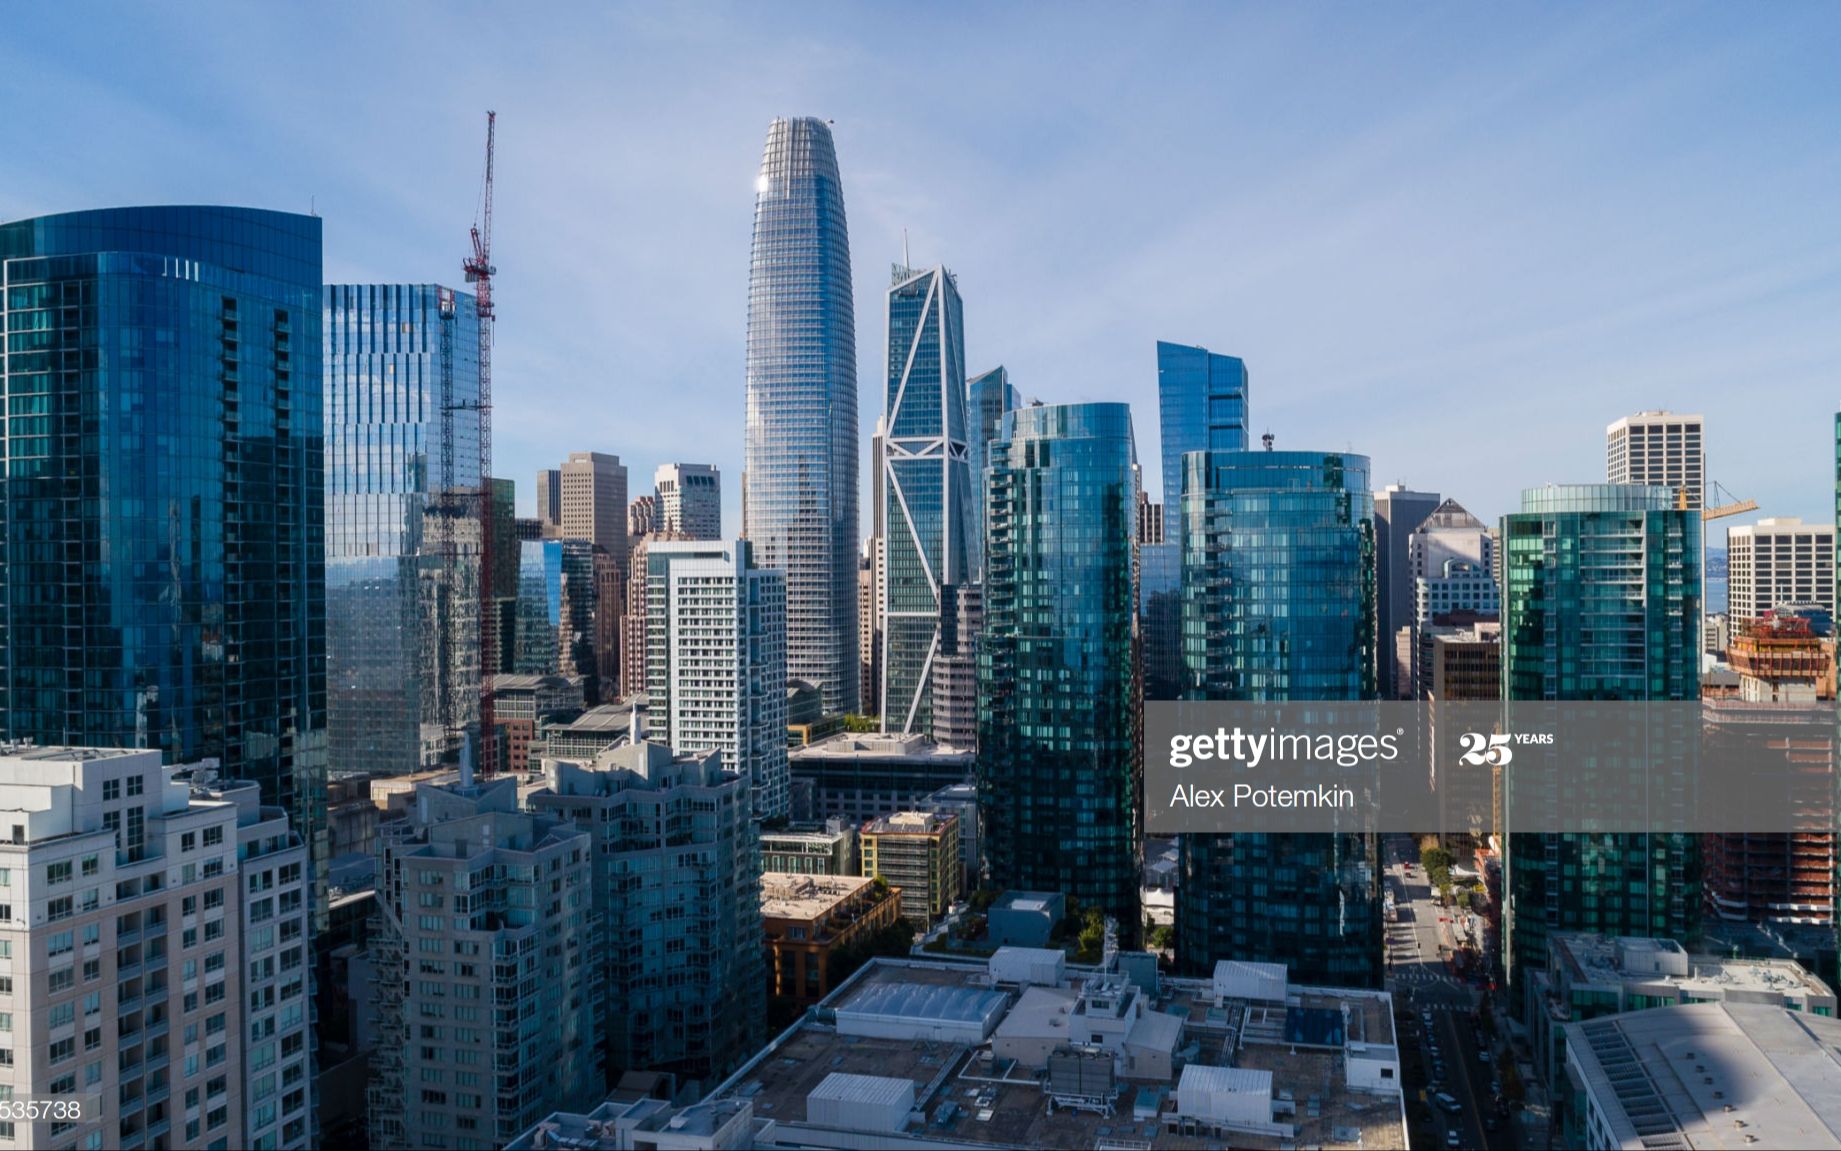 【航拍三番】美国西部金融中心,全球工资水平最高城市之一——旧金山